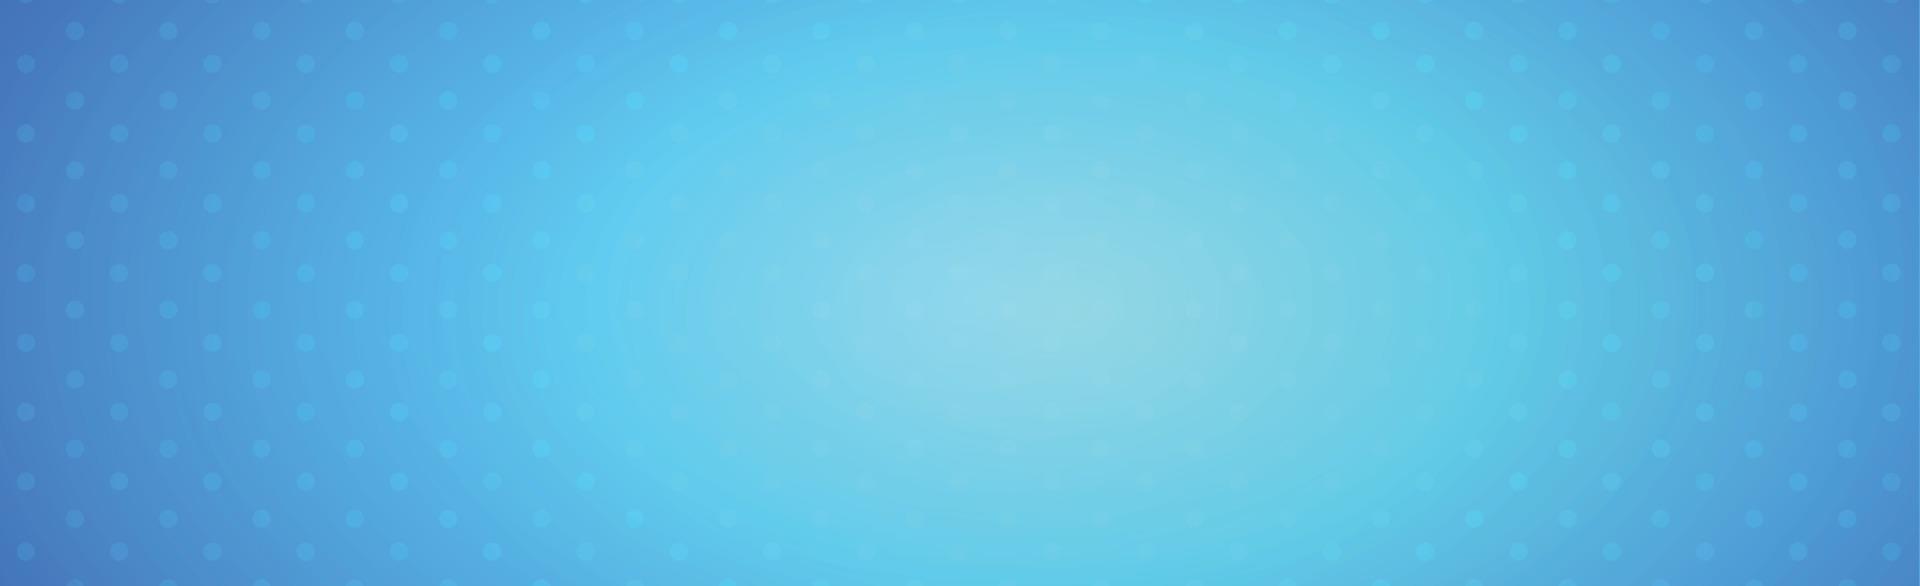 fond bleu abstrait avec des points blancs - vecteur